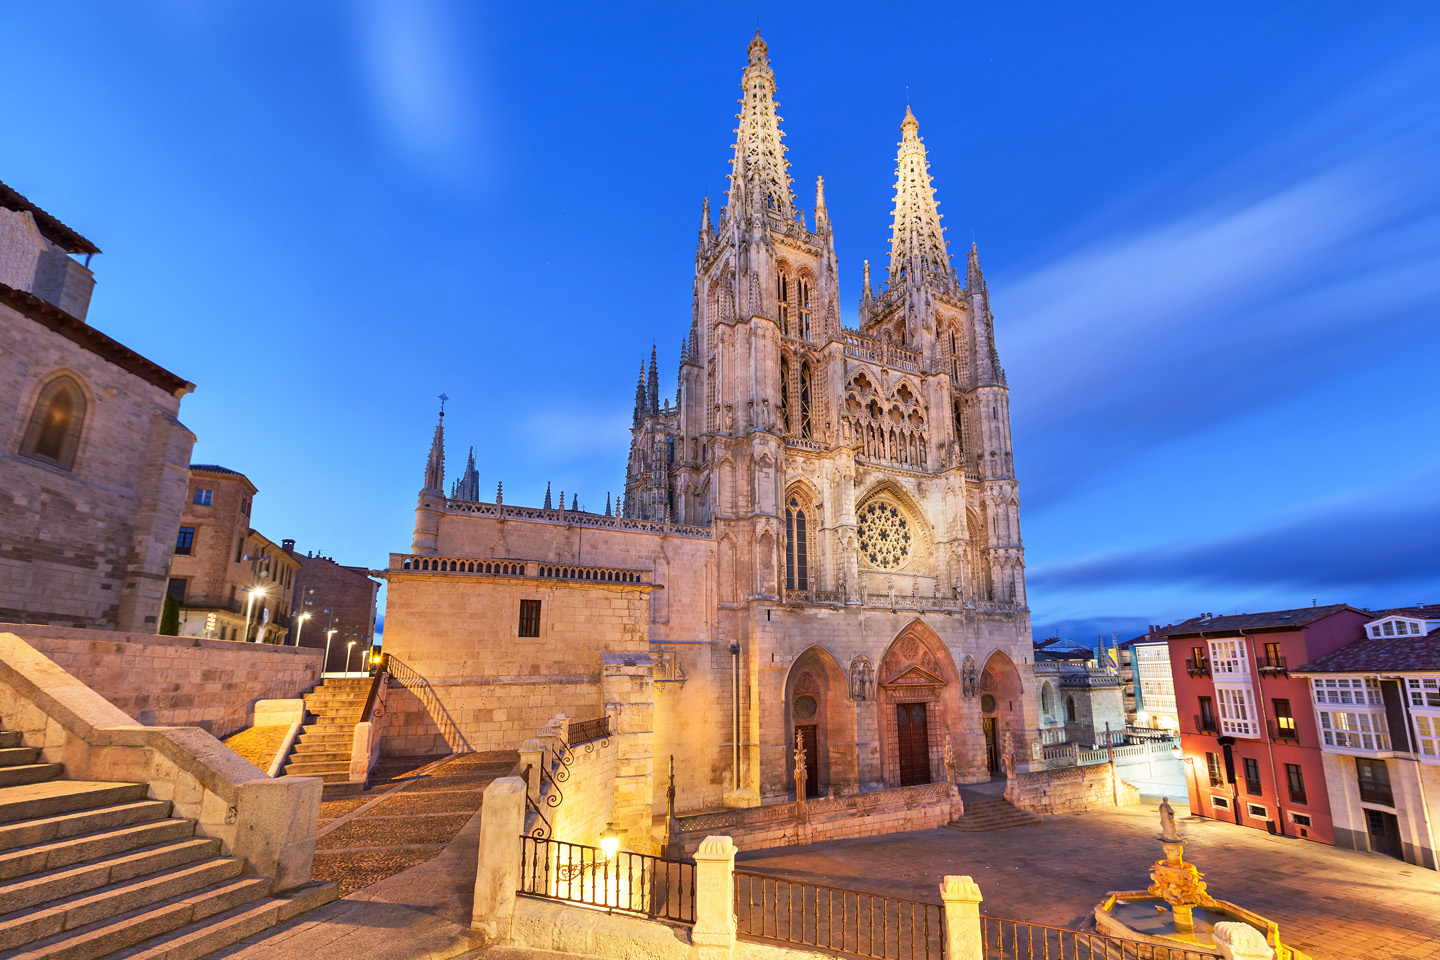 La Catedral de Santa María de Burgos comenzó a construirse en el siglo XIII (año 1221), al mismo tiempo que la de las grandes catedrales francesas de la región de París, y finalizó en el siglo XV. En ella se halla la tumba del Cid. 